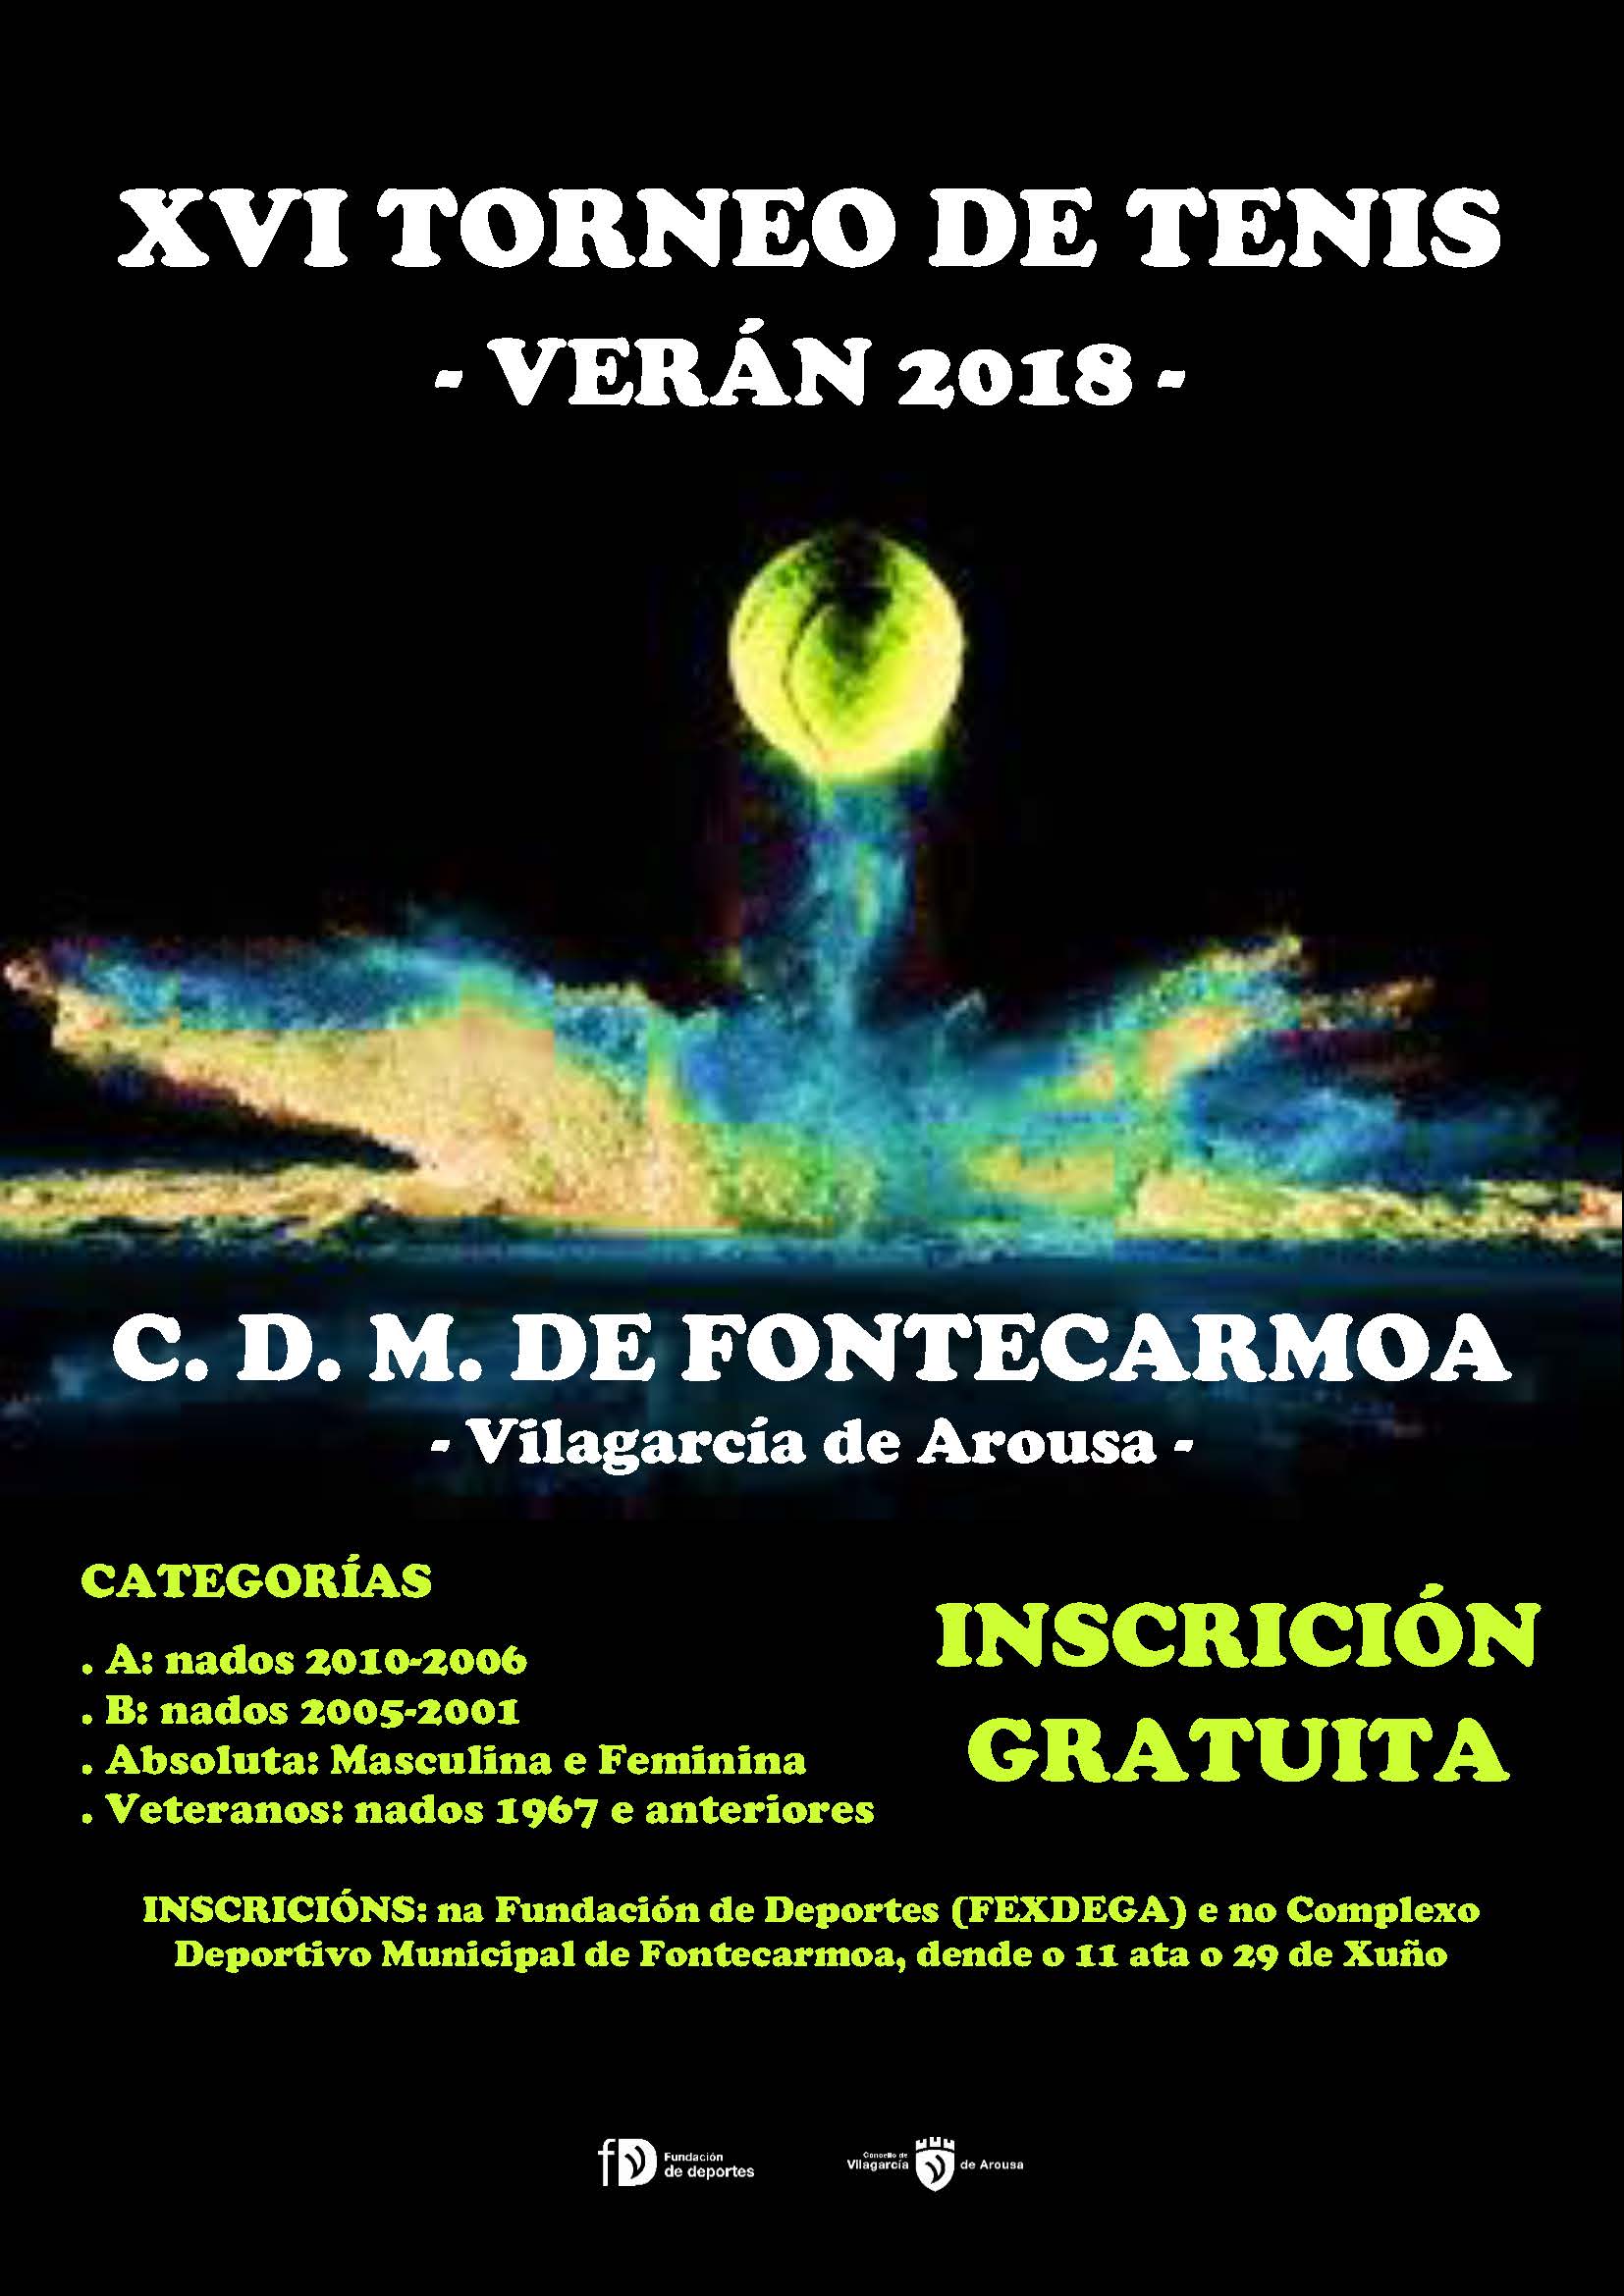 Cartel del XVI TORNEO DE TENIS VERÁN 2018